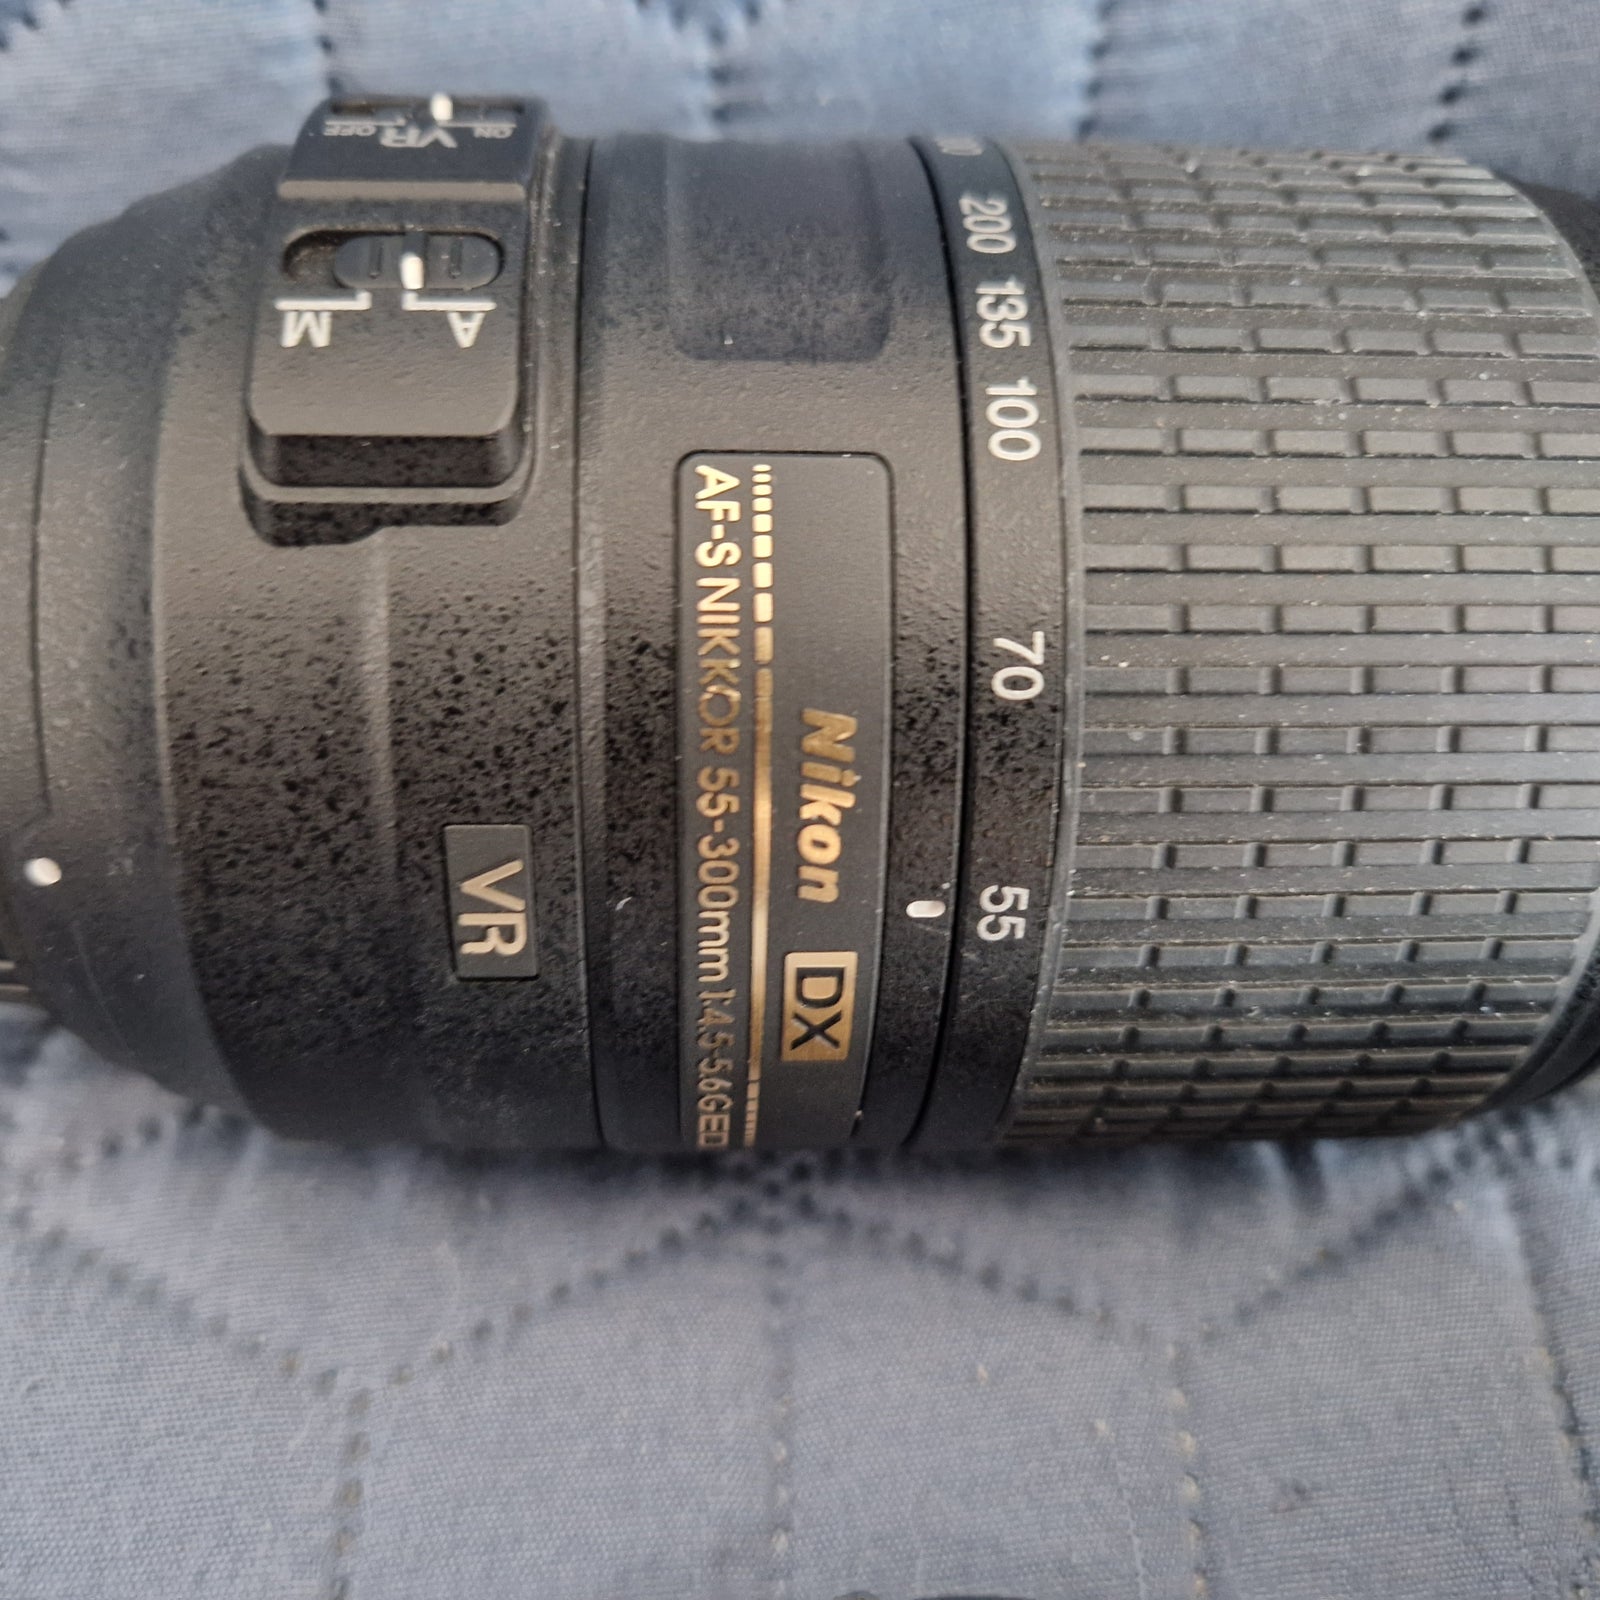 Zoomobjektiv, Nikon, AF.-S NIKKOR 55-300 mm 1:4.5-5.6 GED